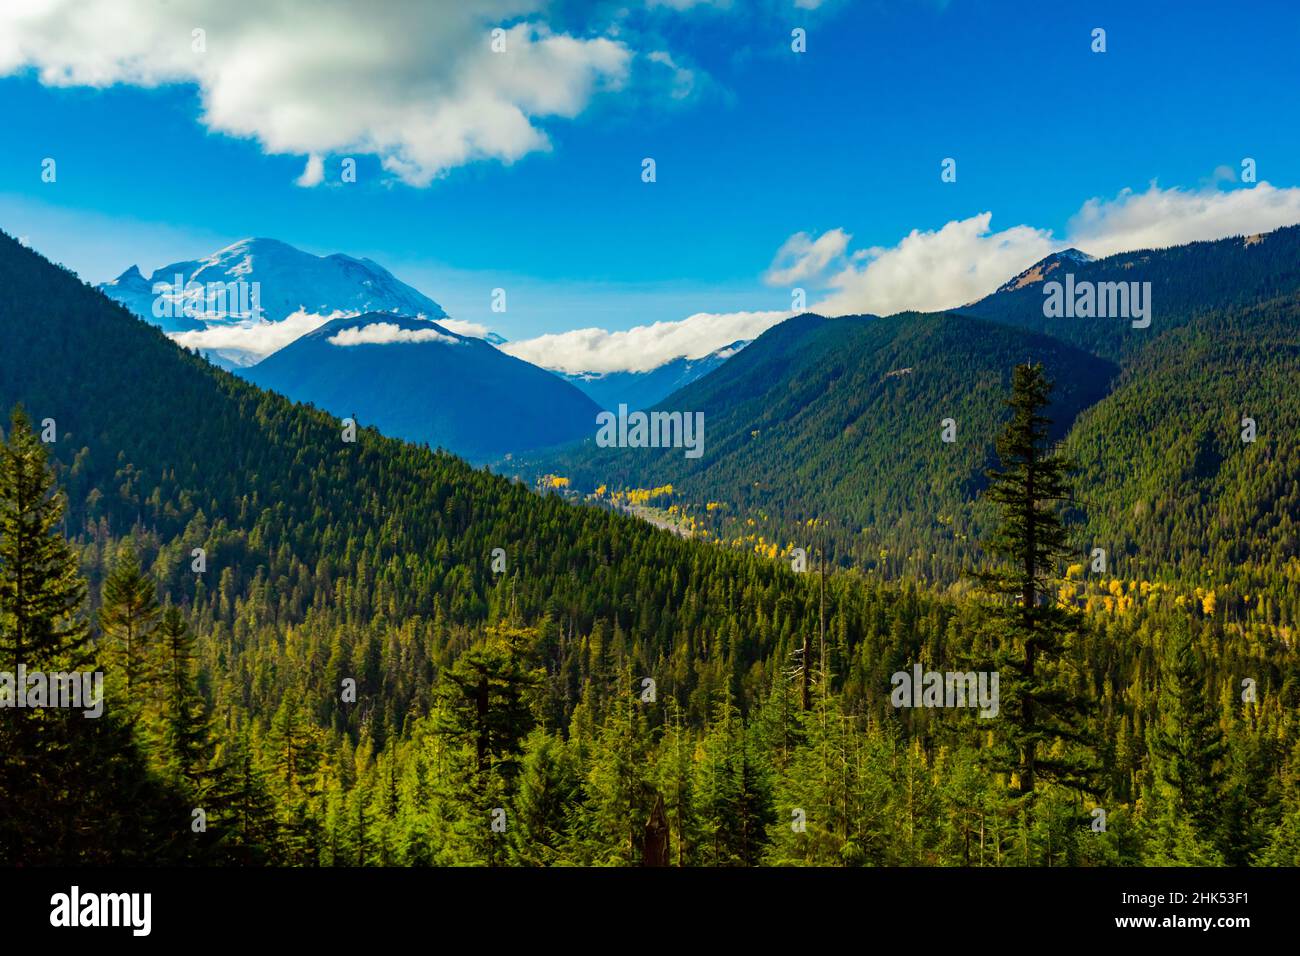 Vue sur le mont Rainier, stratovolcan de la chaîne des Cascades du Nord-Ouest du Pacifique, situé dans le parc national du mont Rainier Banque D'Images